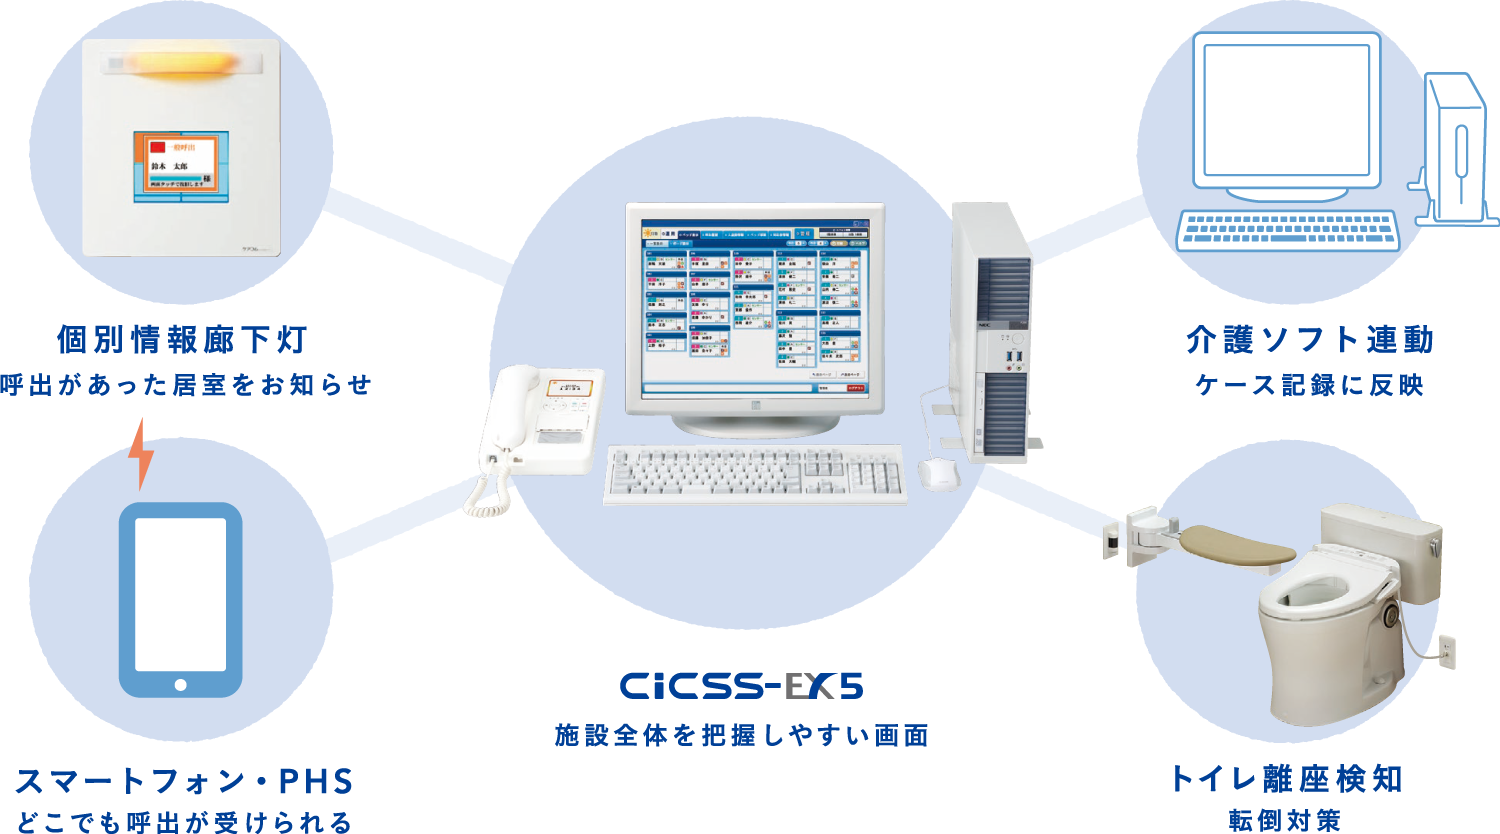 株式会社ケアコム CiCSS-EX5